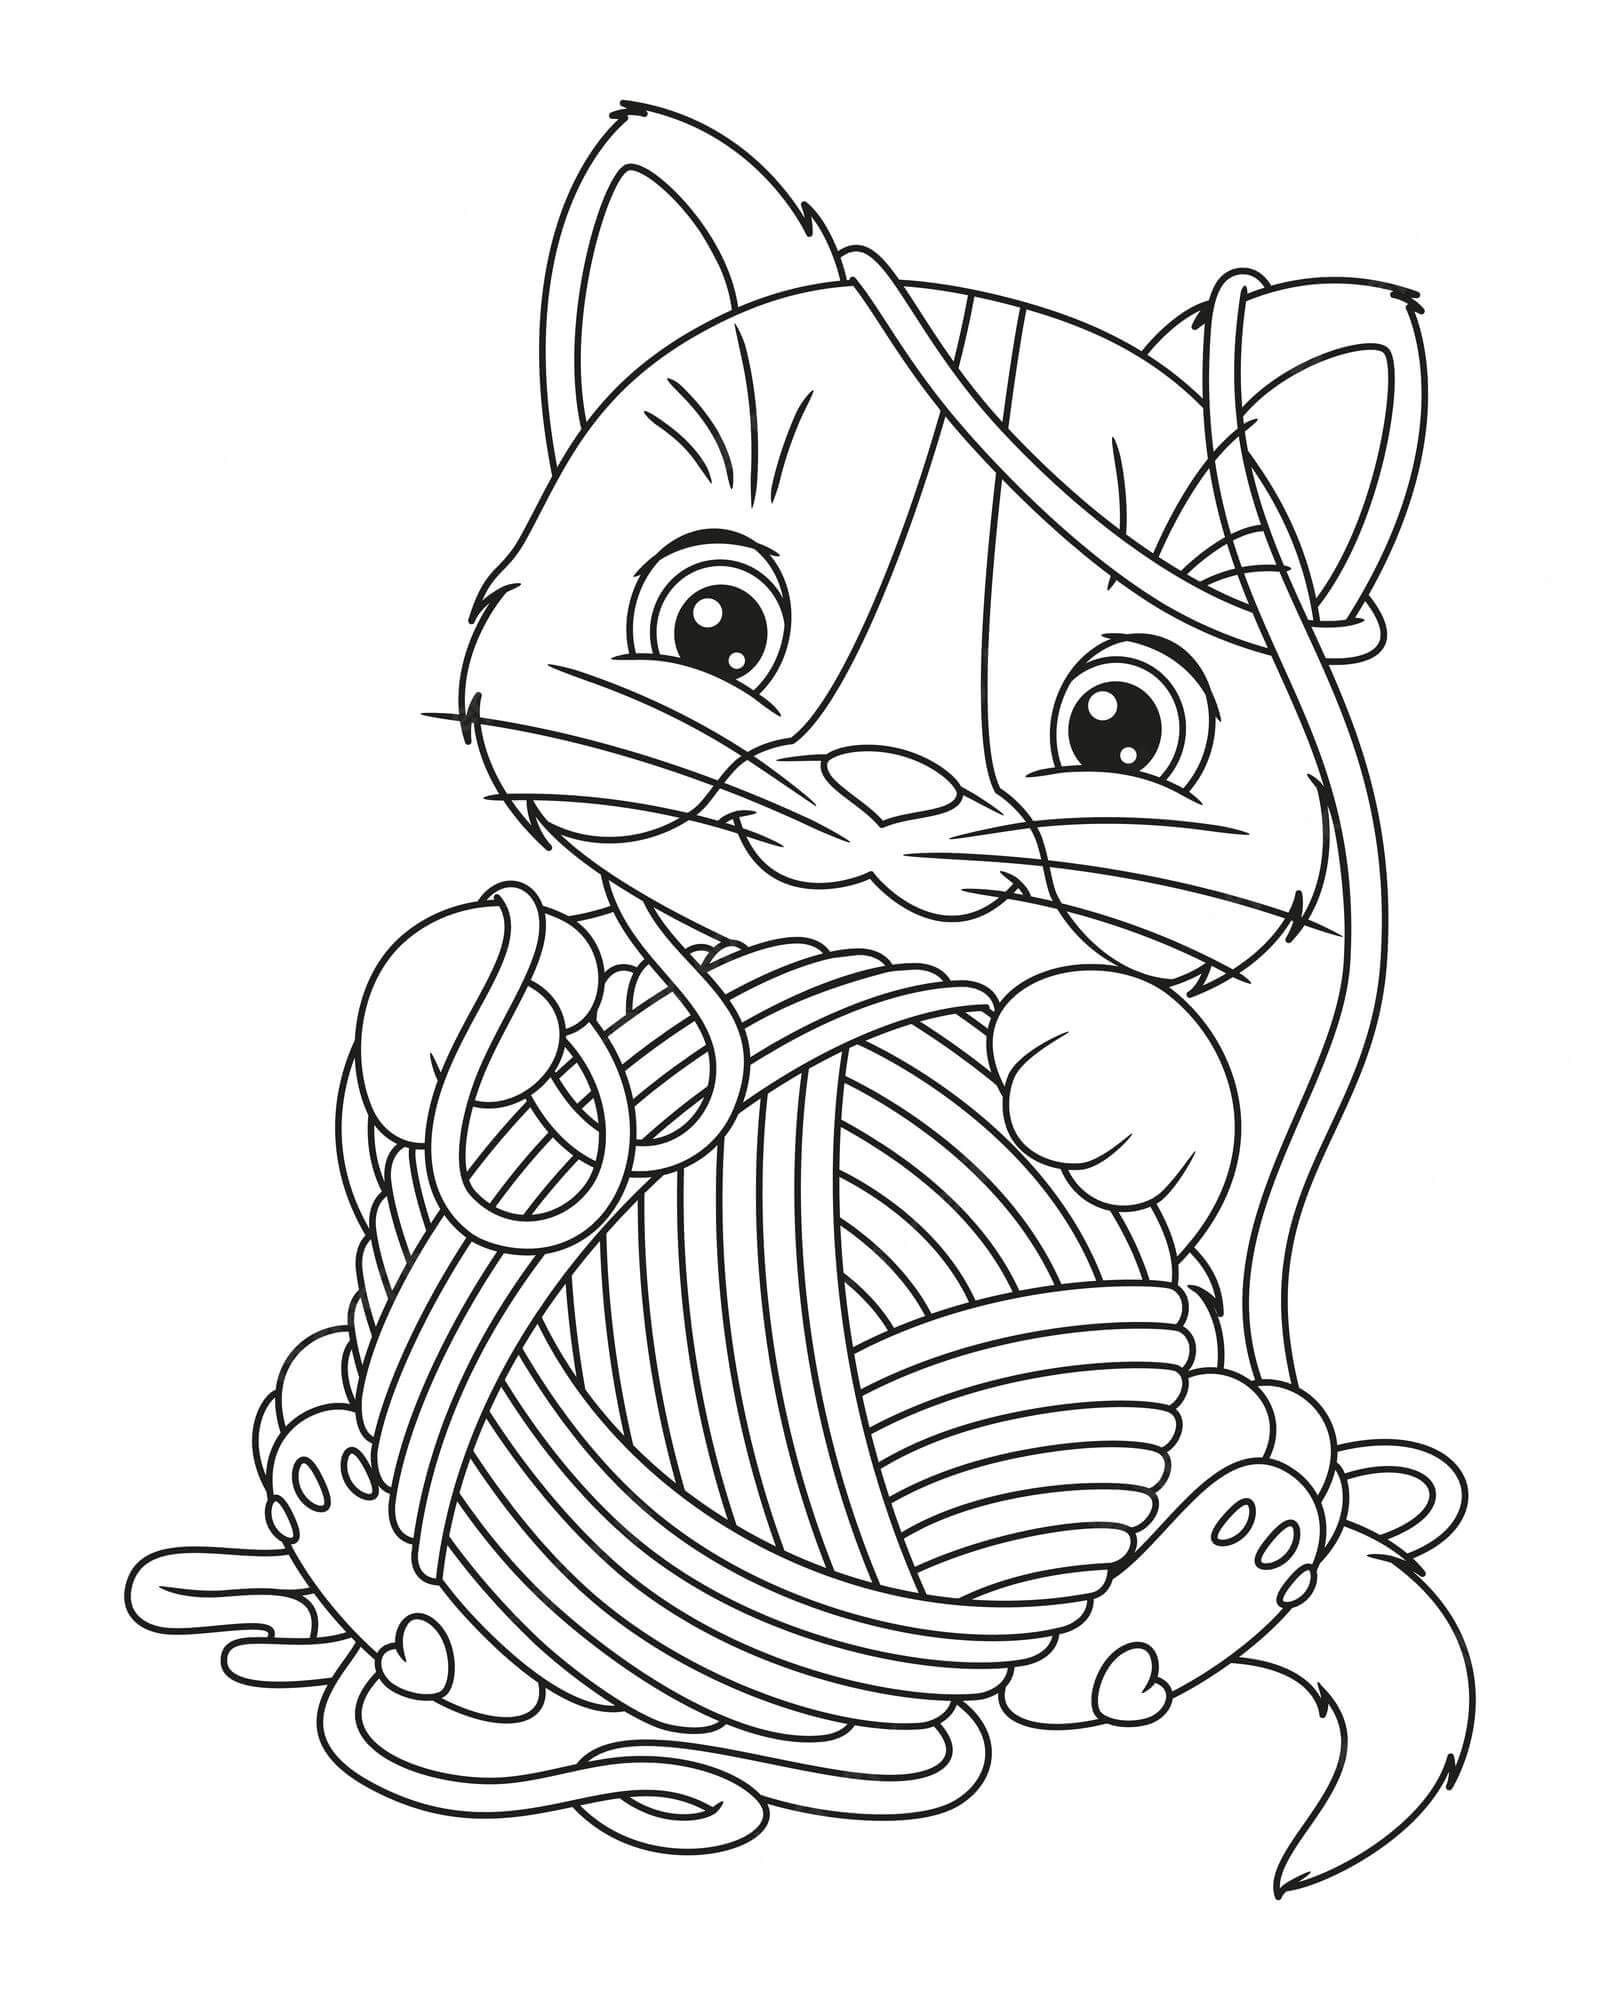 Gato com Bola de Lã para colorir